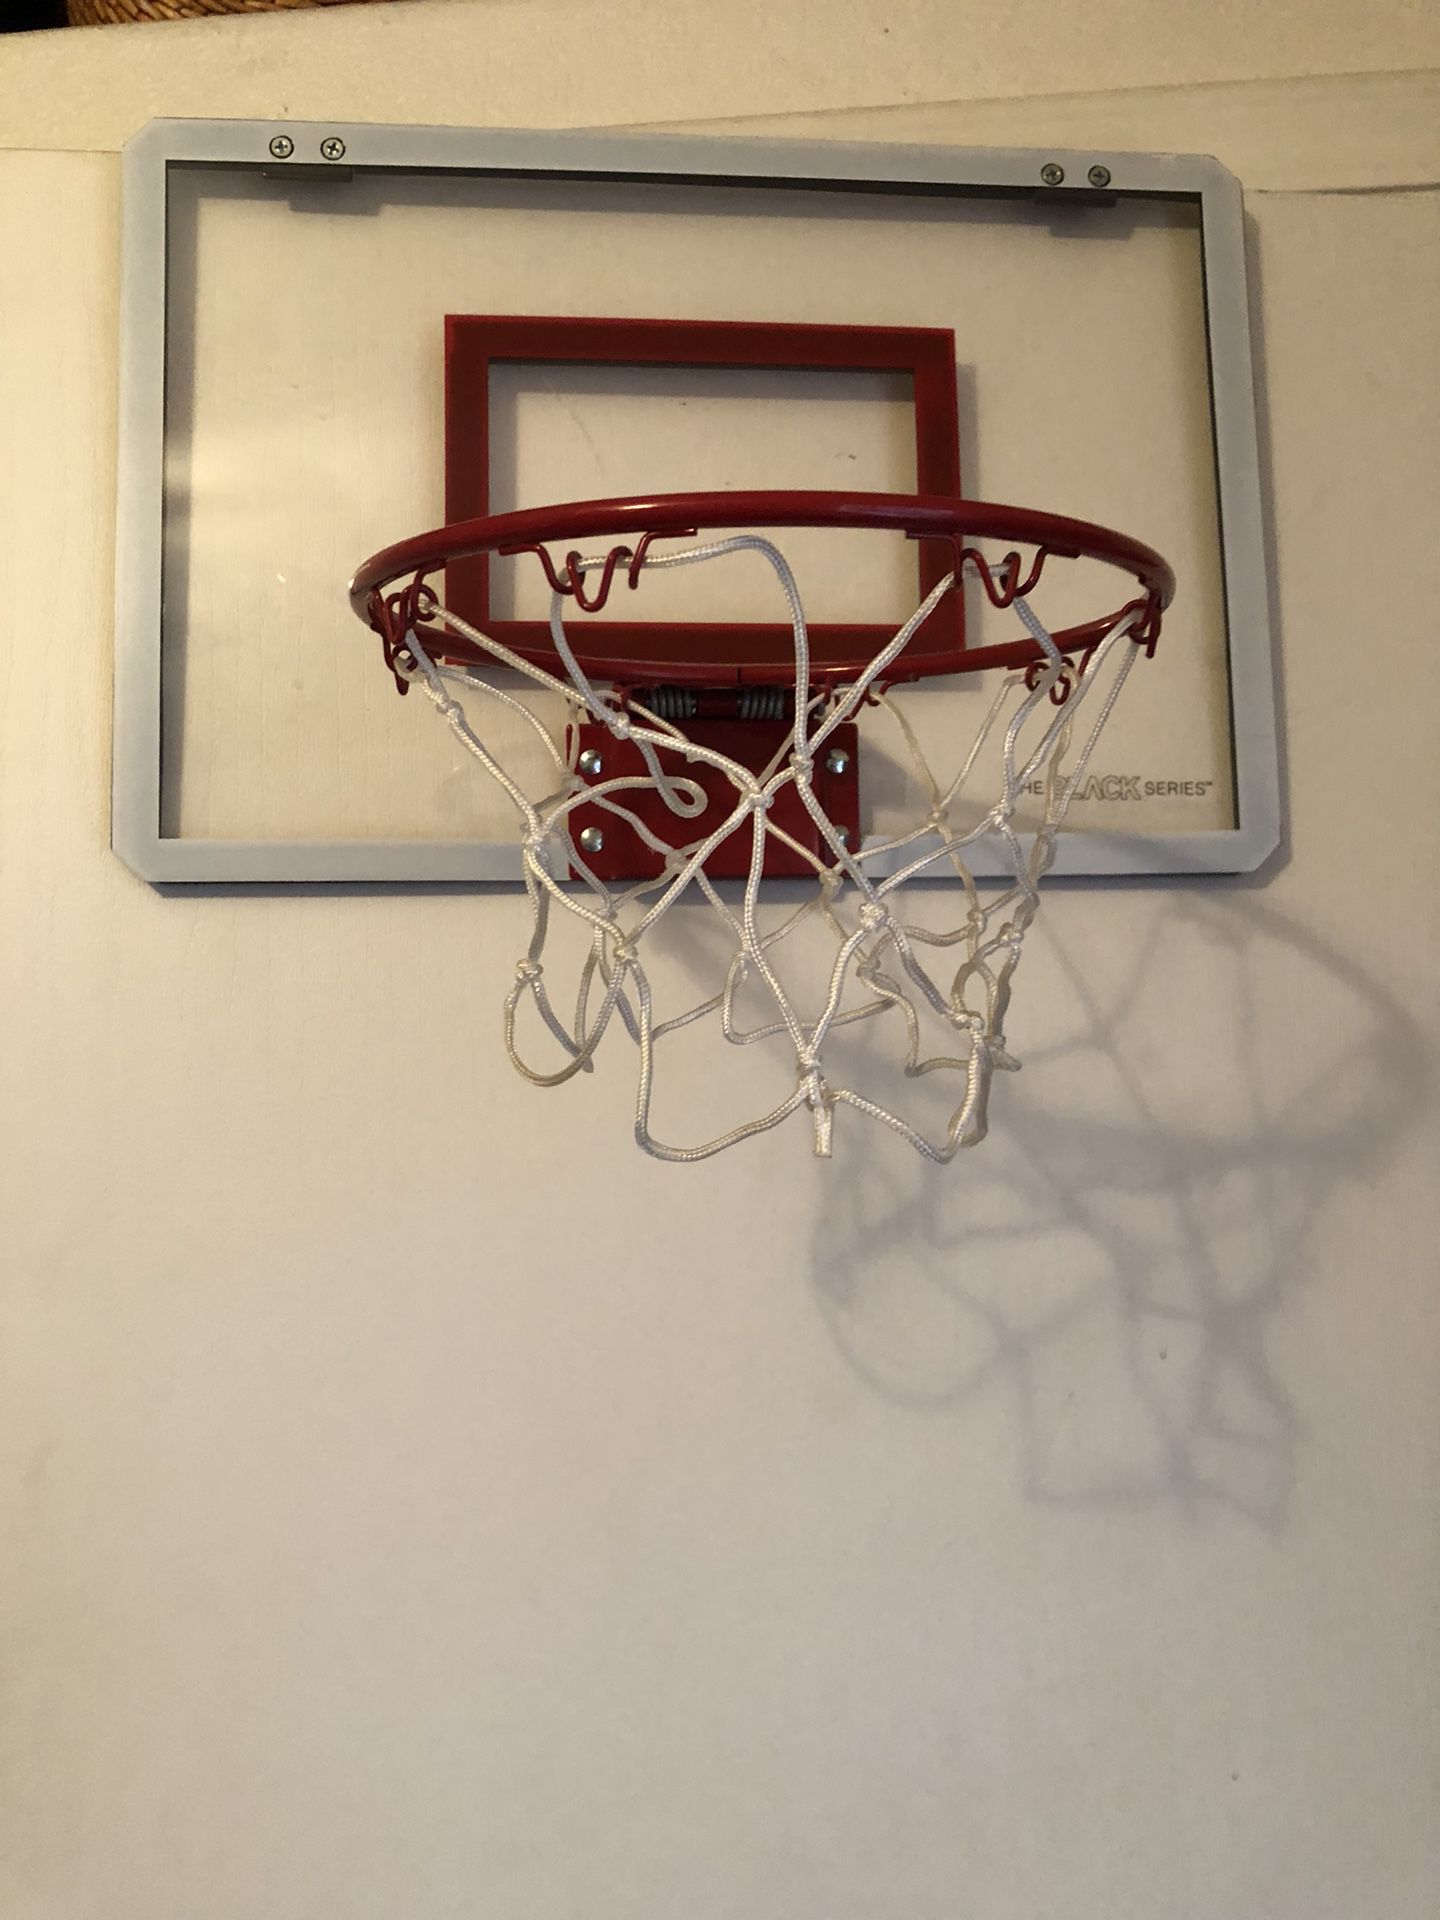 New Basketball hoop for door